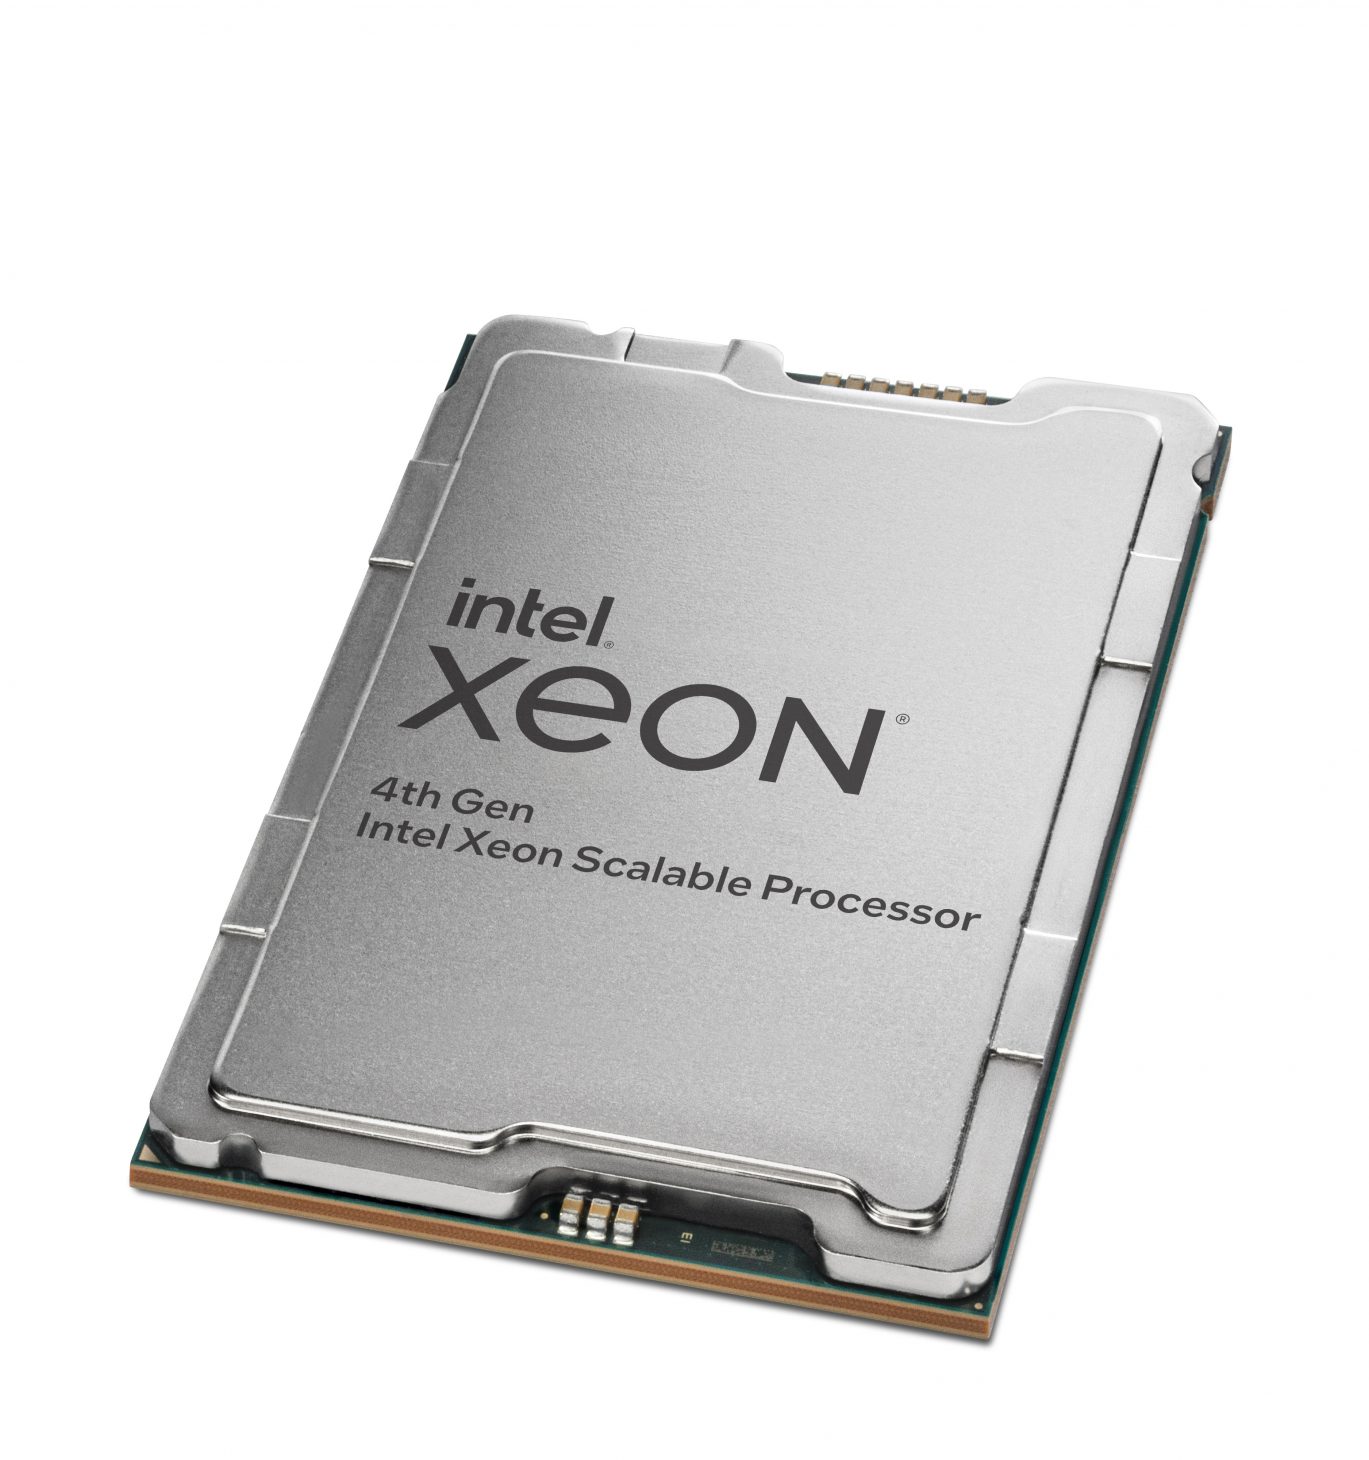 Vi xử lý Xeon Scalable thế hệ 4, các mẫu CPU và GPU thuộc dòng Max của Intel xuất hiện - Intel 4th Gen Intel Xeon 1